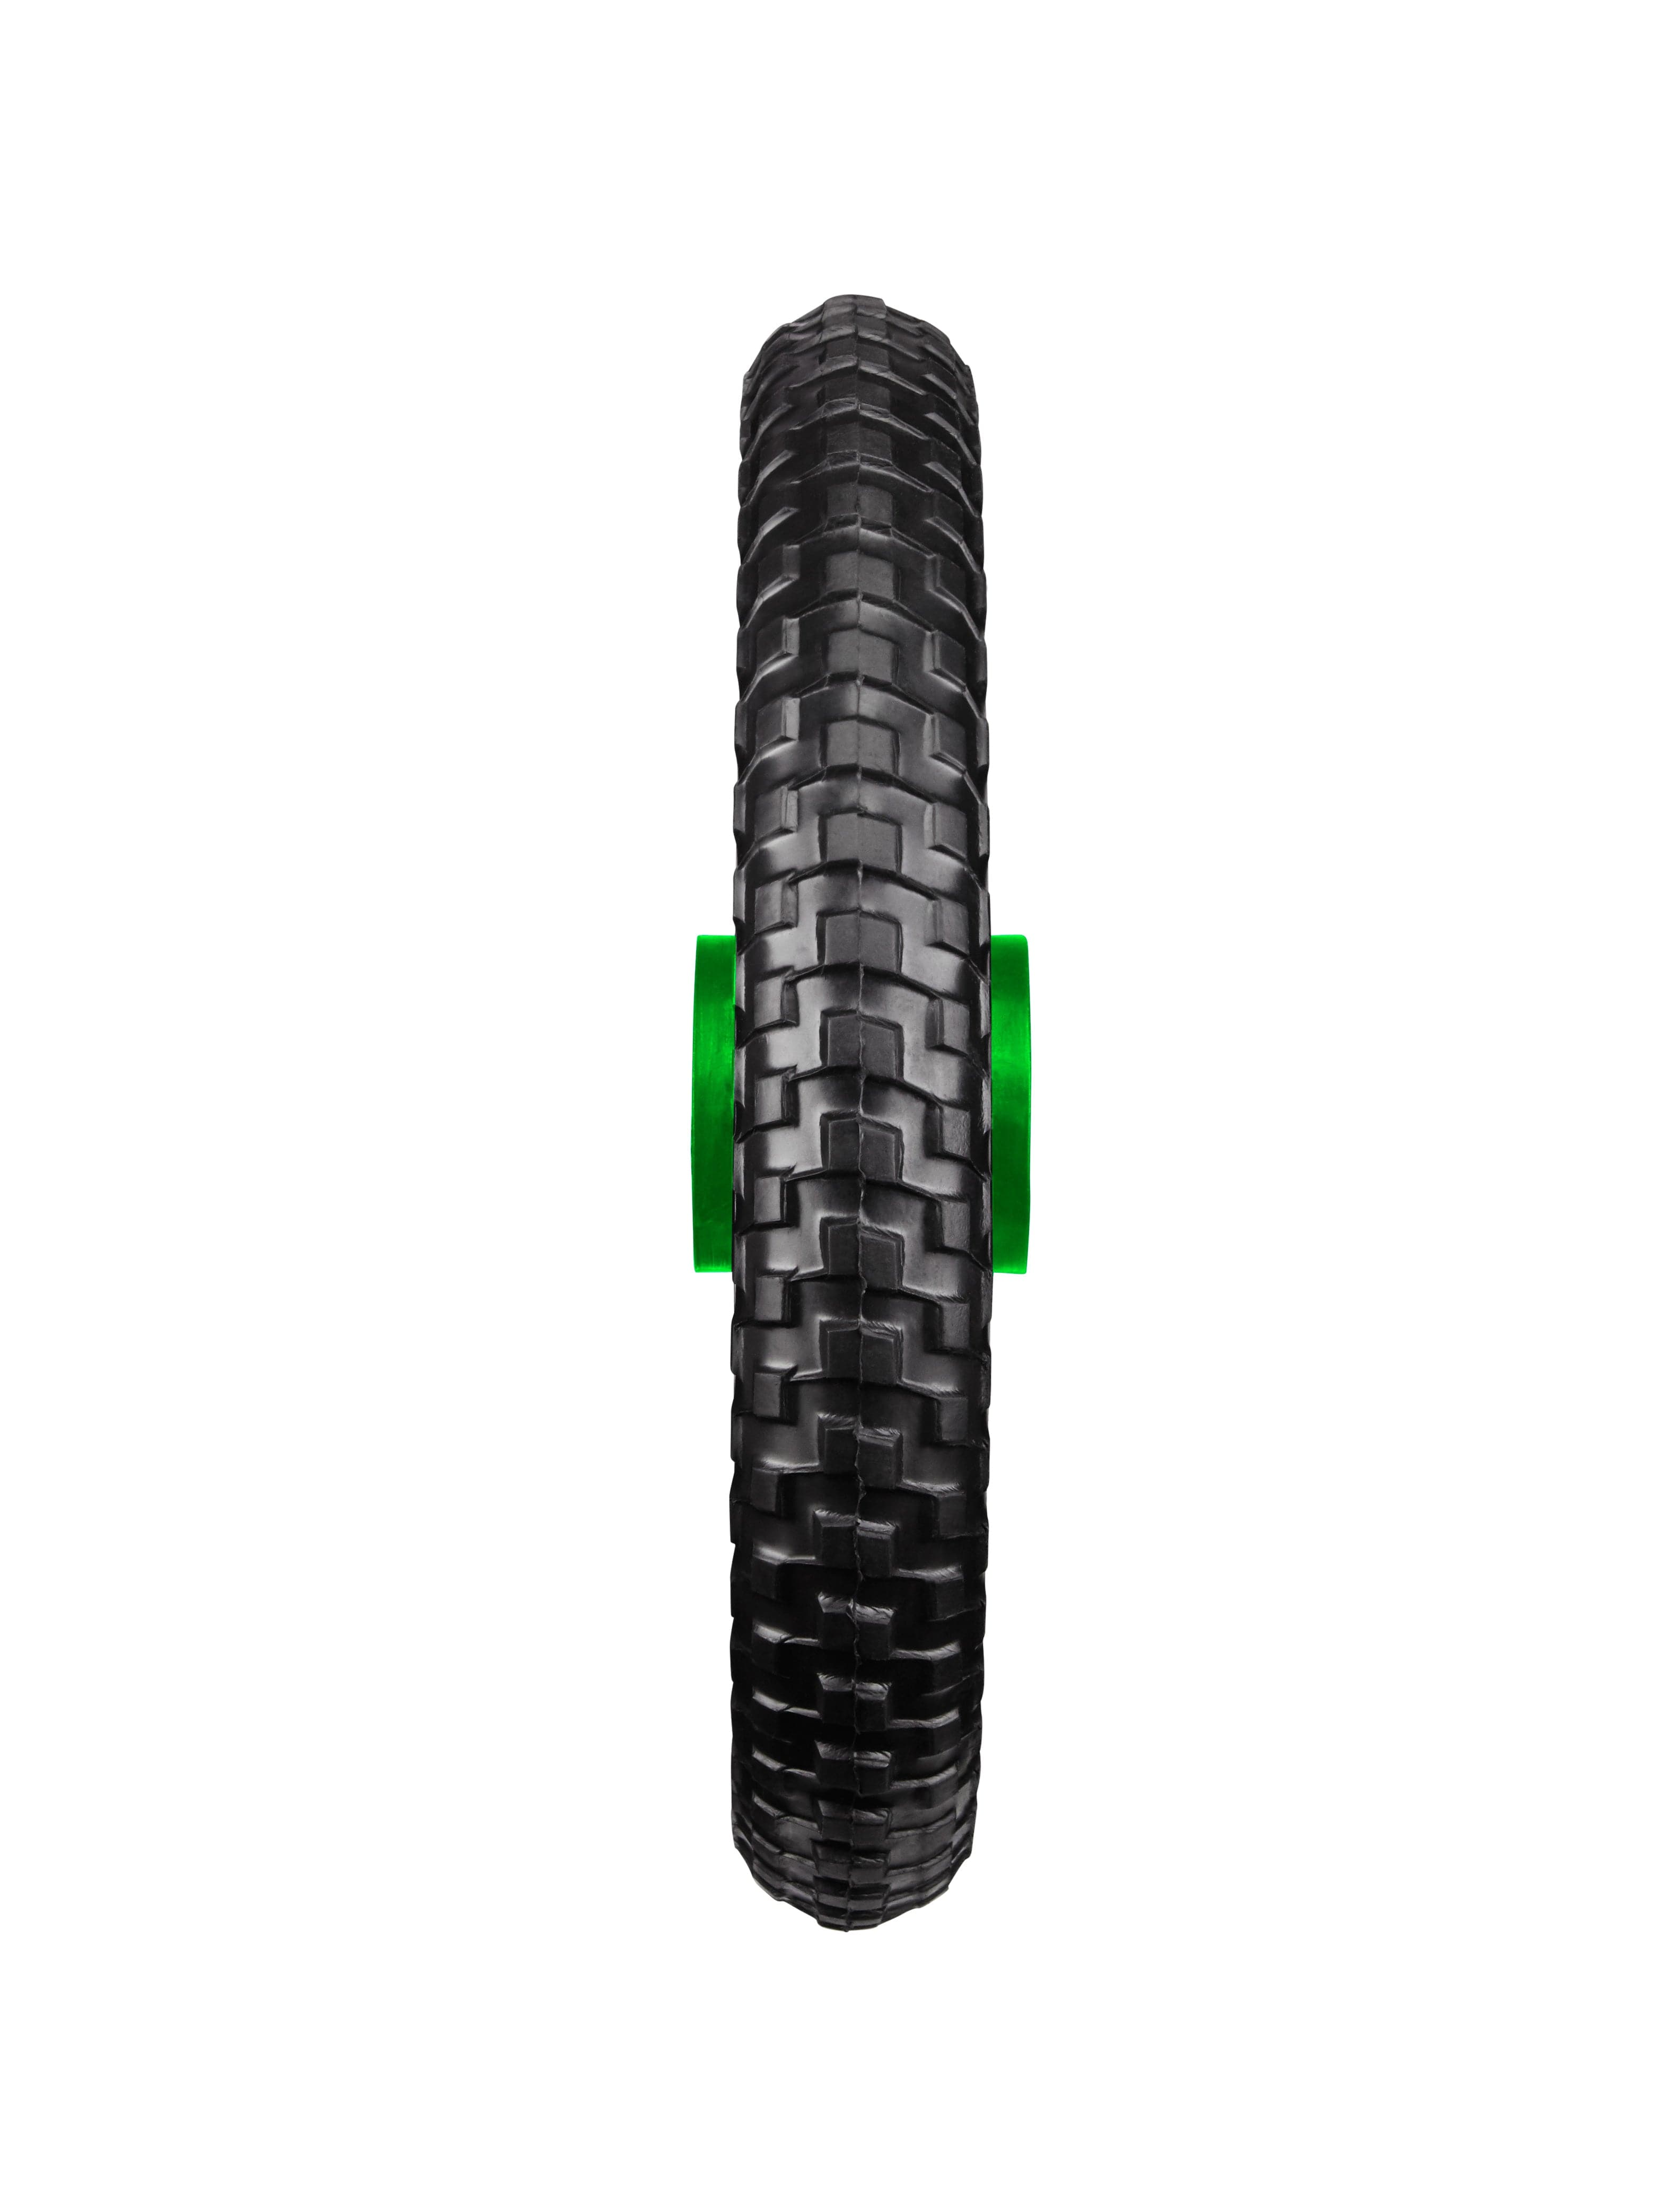 All-Terrain Tubeless Foam Wheel - green